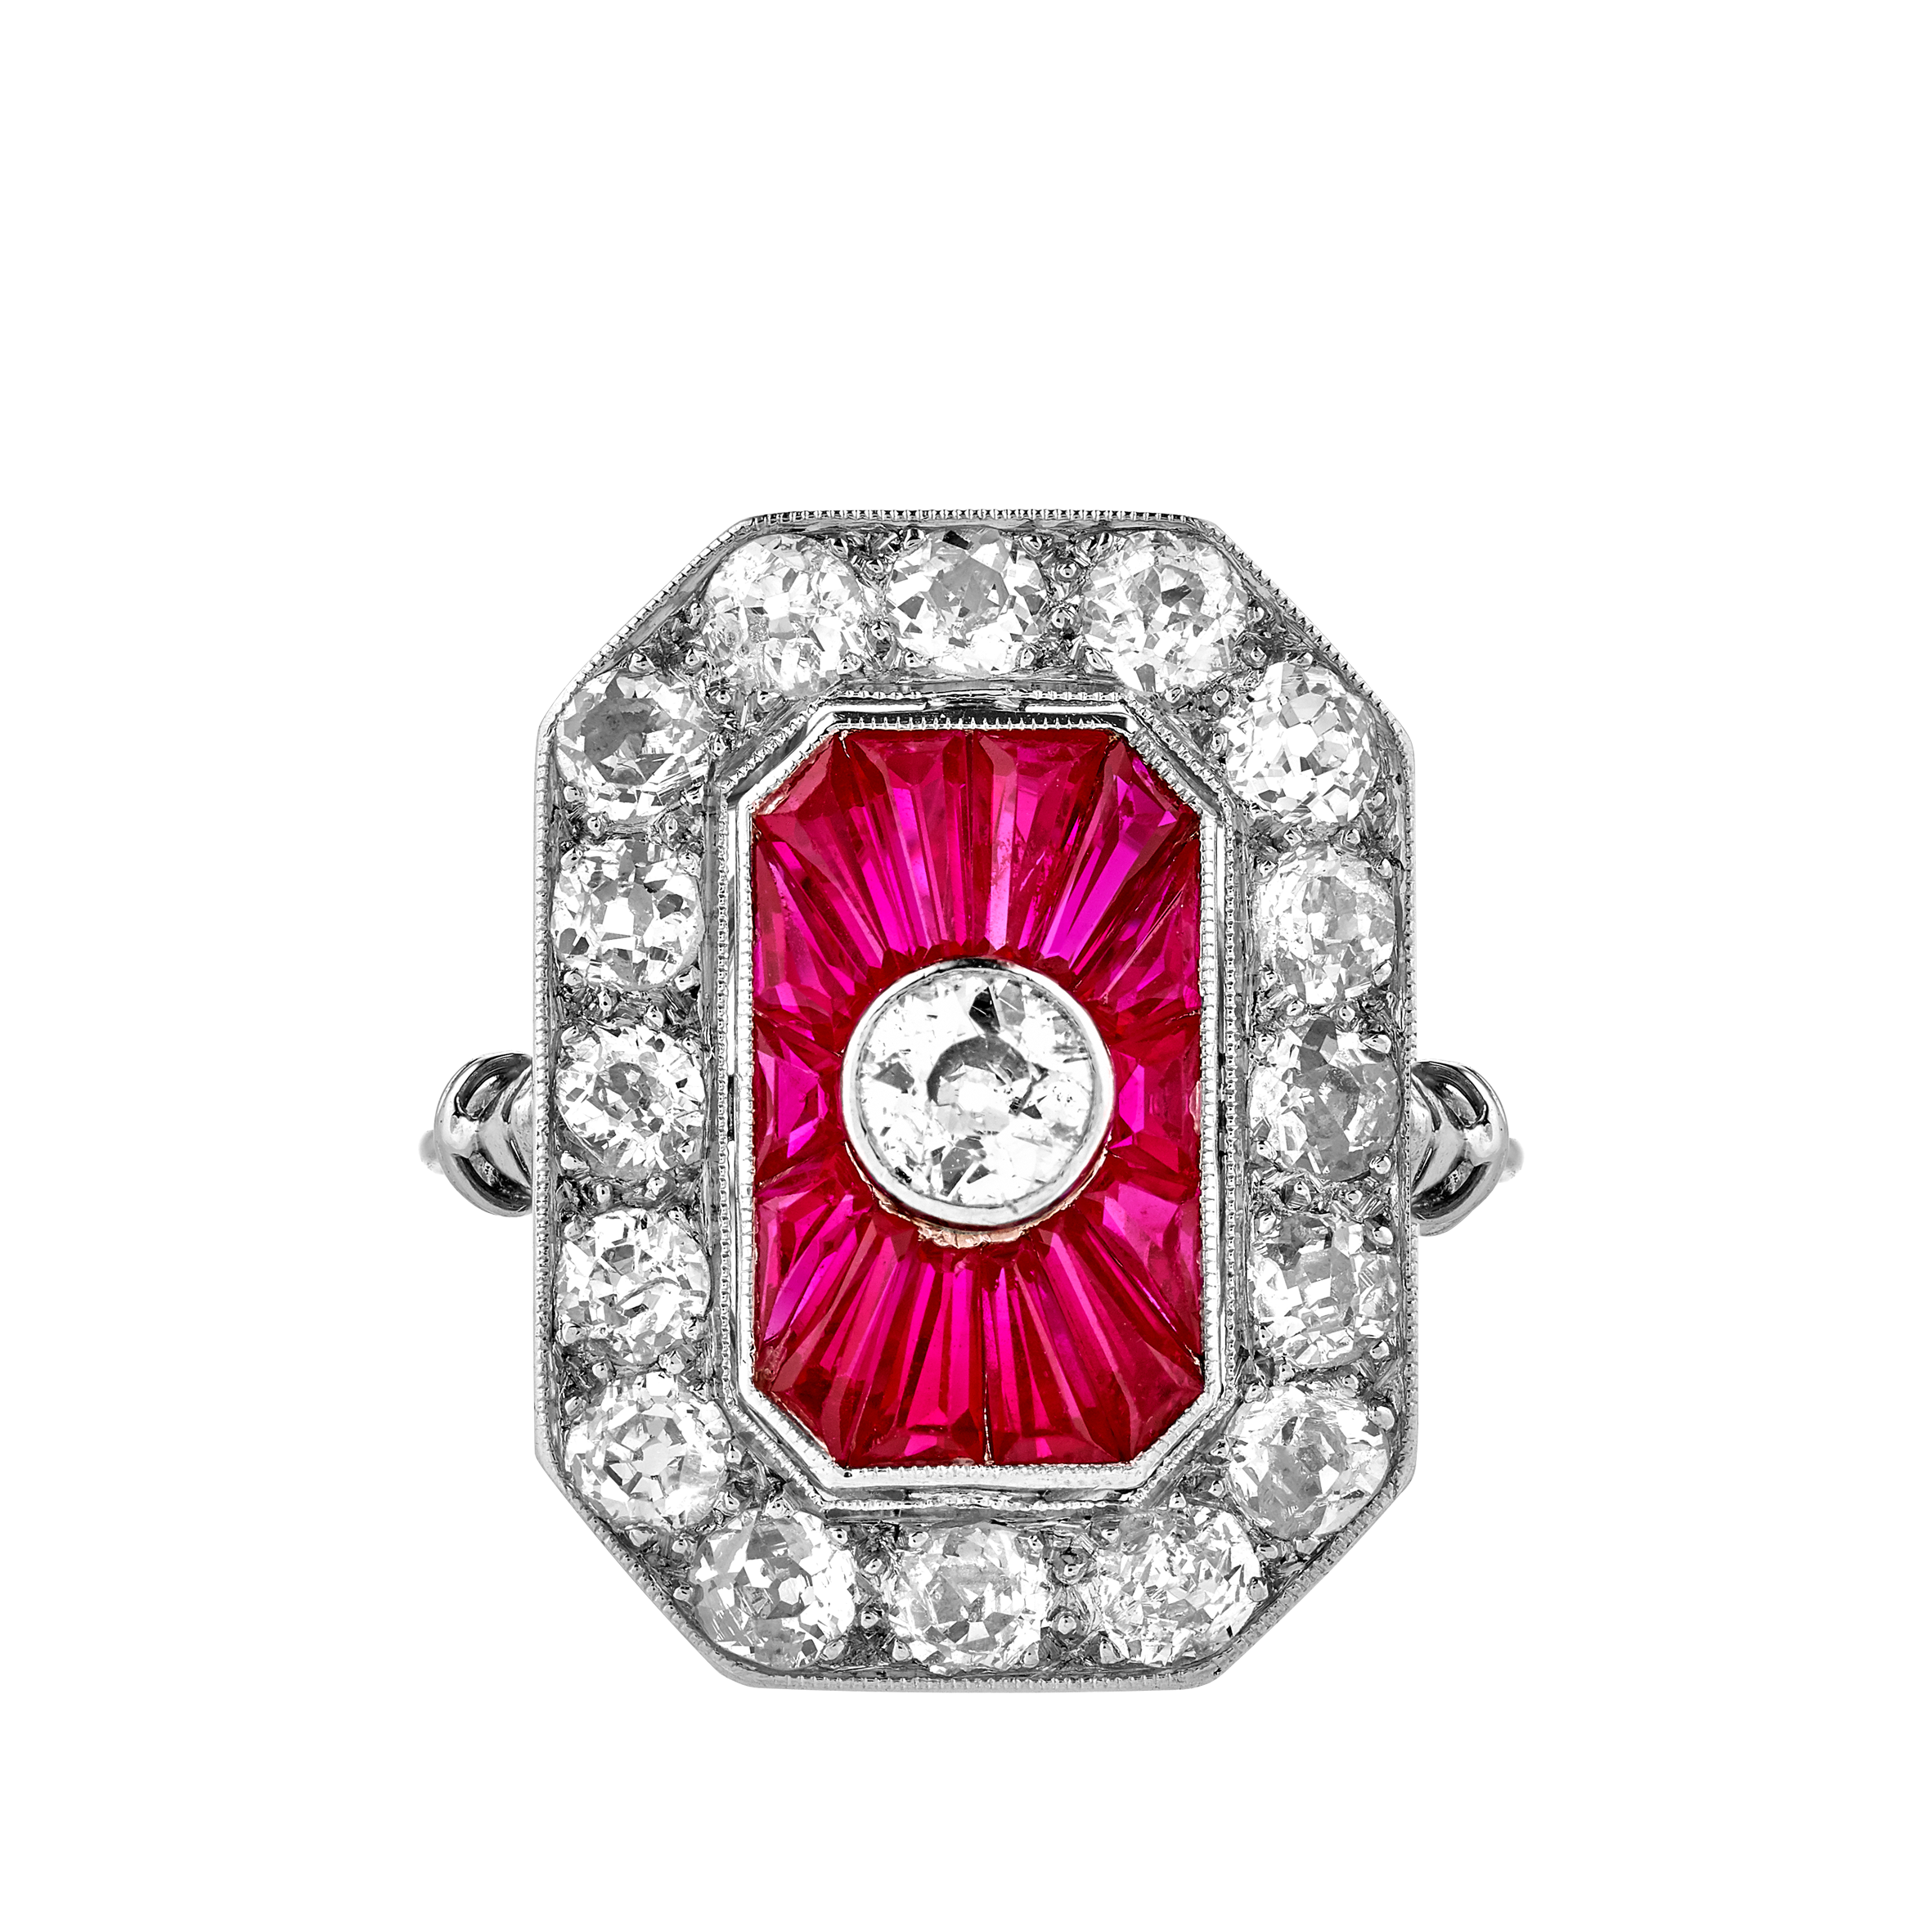 Bague octogonale diamants et rubis calibrés vers 1925 Gerphagnon